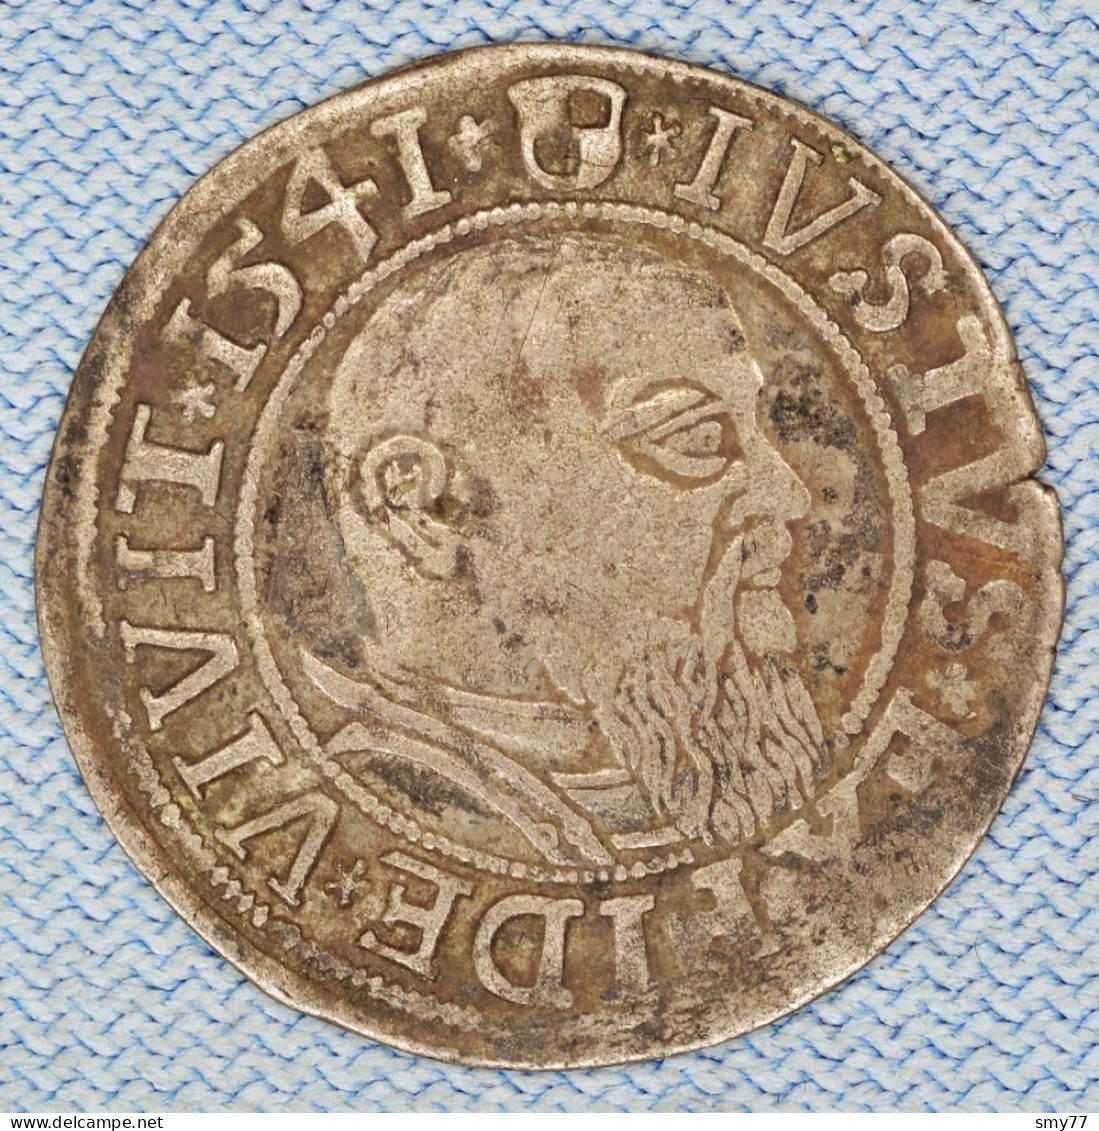 Preussen / Prussia • 1 Groschen 1541 • Albrecht Von Preussen • Herzogtum / Prusse / German States / Silver • [24-720] - Small Coins & Other Subdivisions